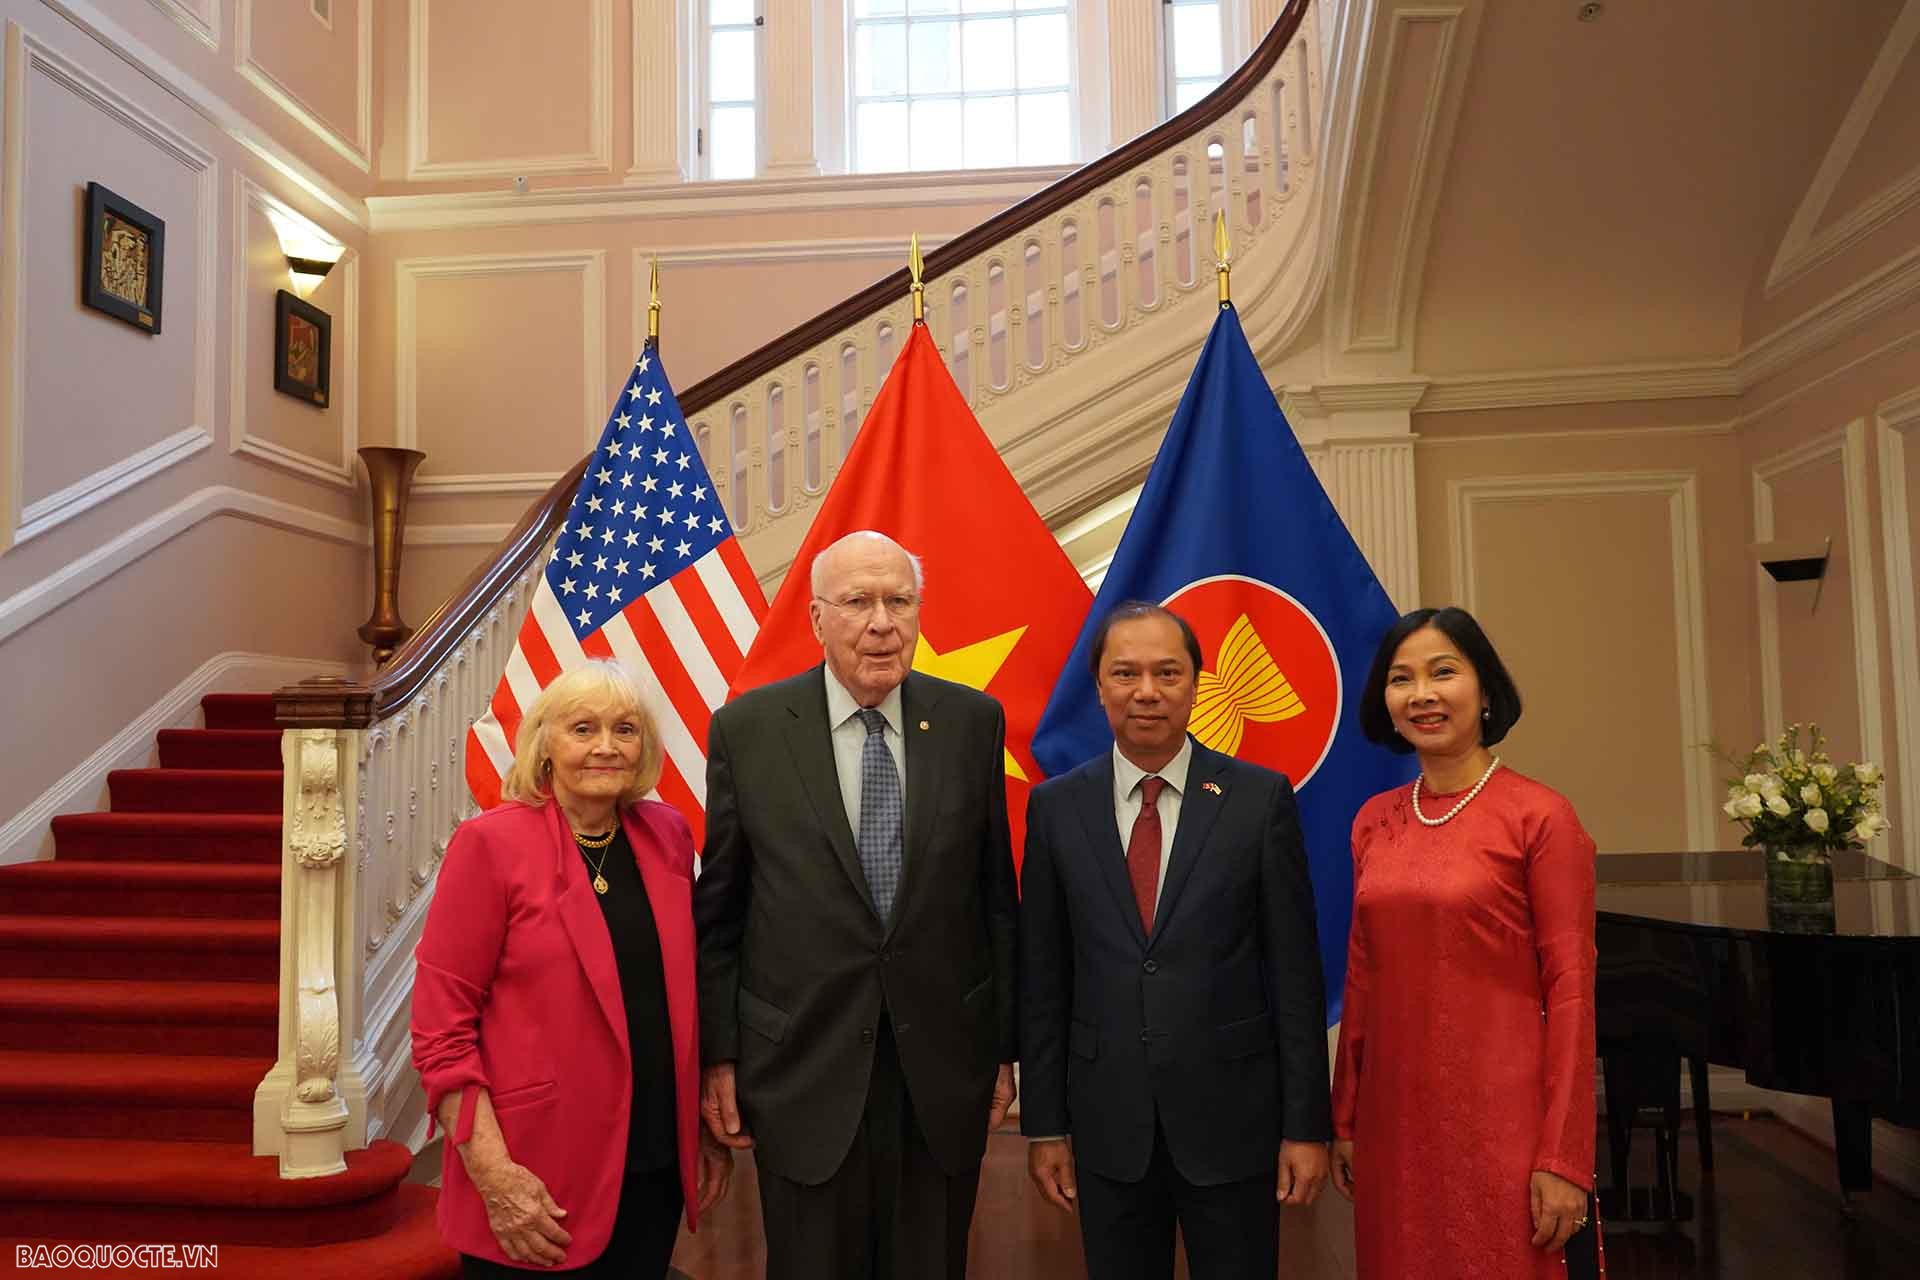 Thượng nghị sĩ Patrick Leahy, Chủ tịch thường trực Thượng viện Hoa Kỳ và phu nhân chụp ảnh lưu niệm cùng Đại sứ Nguyễn Quốc Dũng và phu nhân.